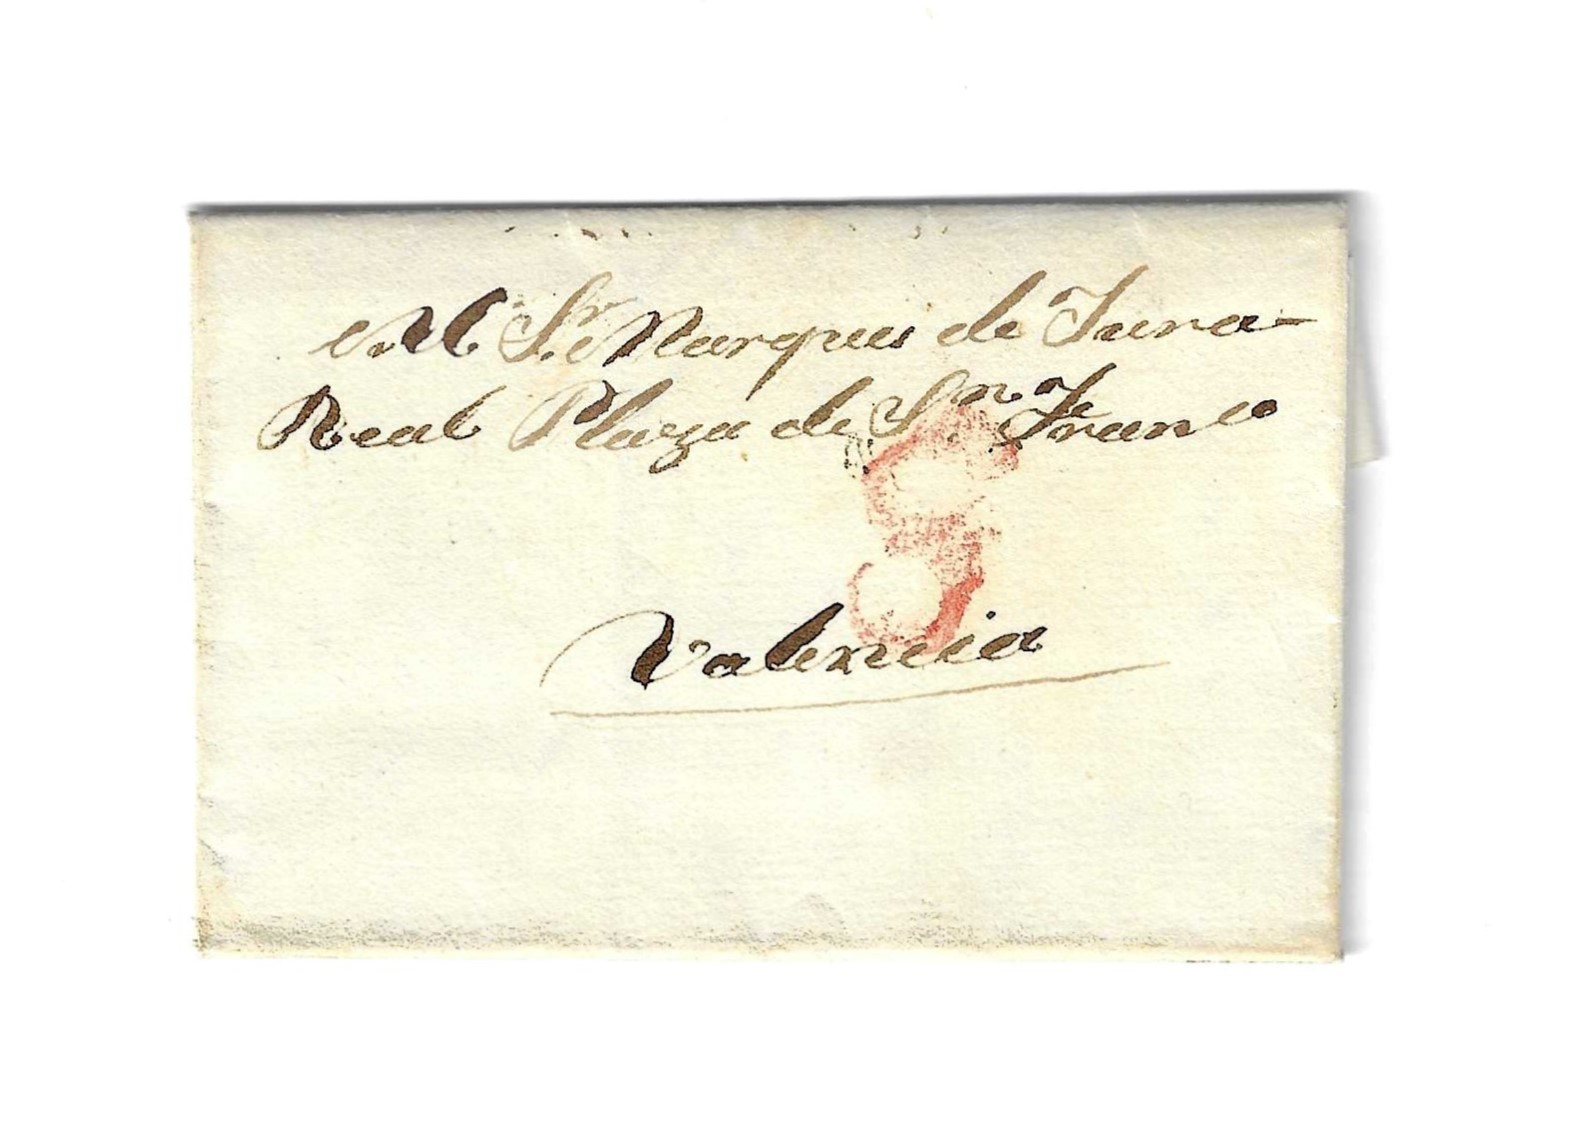 Carta de Madrid a Valencia, dirigida al marqués de Jura Real, del 11 mar. 1831. (sin marca) Porteo 8 R.